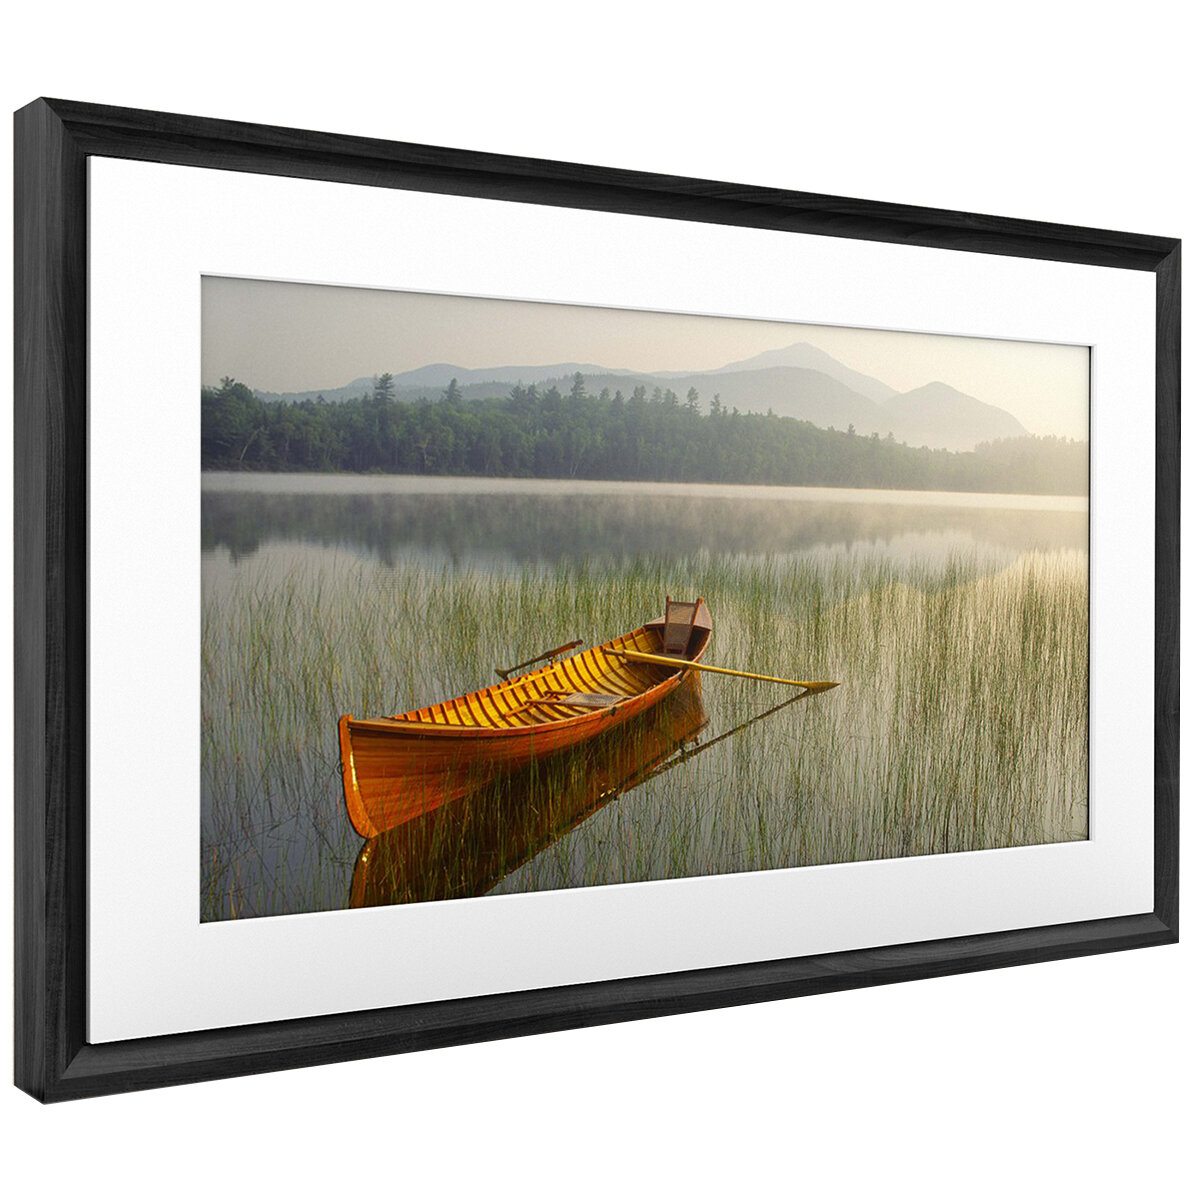 Netgear Meural Canvas II 21.5 Inch Smart Art Frame Black